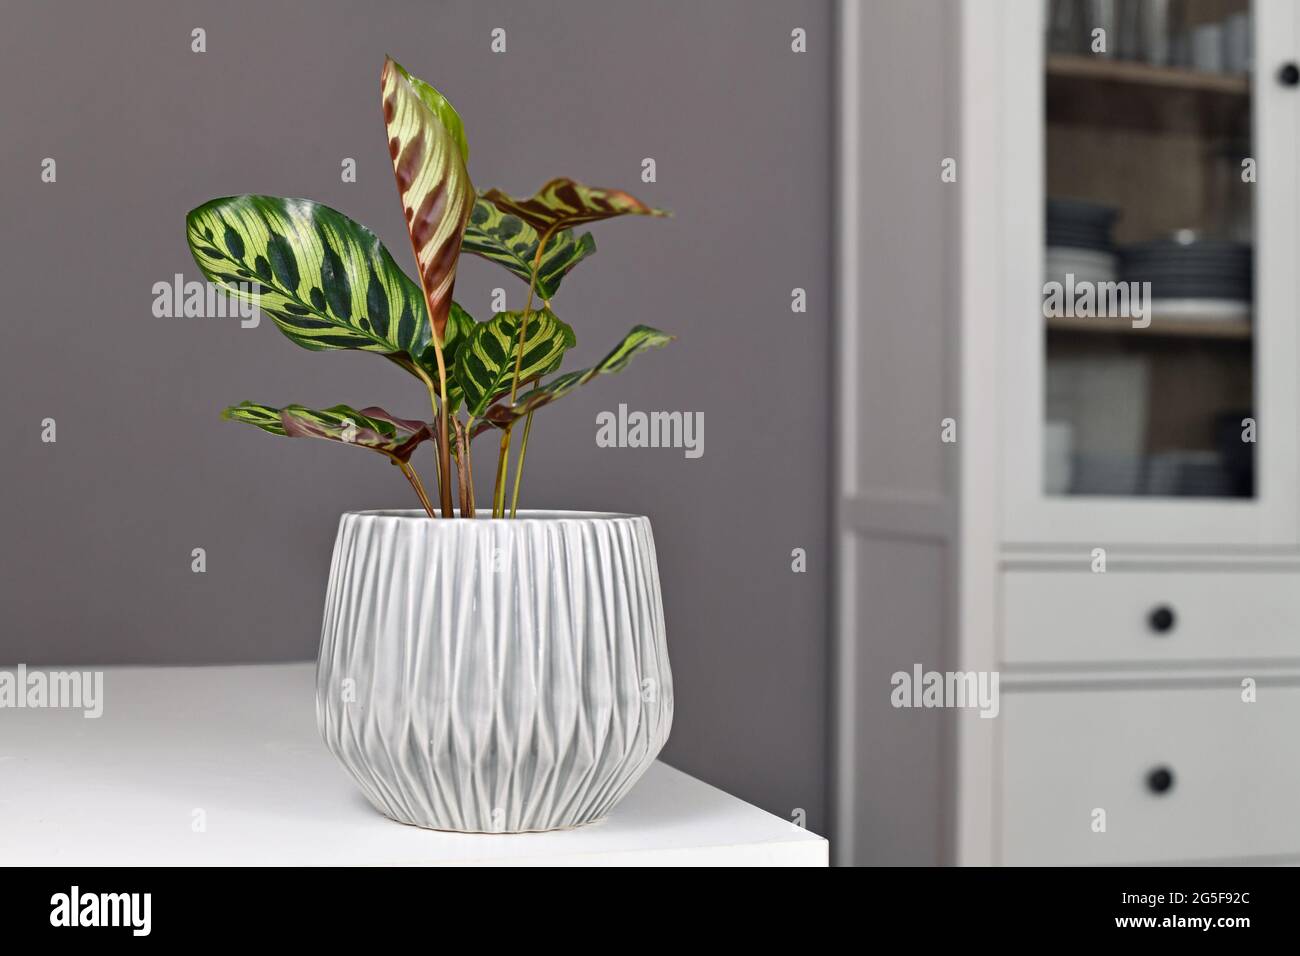 Tropische 'Calathea Makoyana' Gebetpflanze im Blumentopf auf dem Tisch vor einer grauen Wand Stockfoto